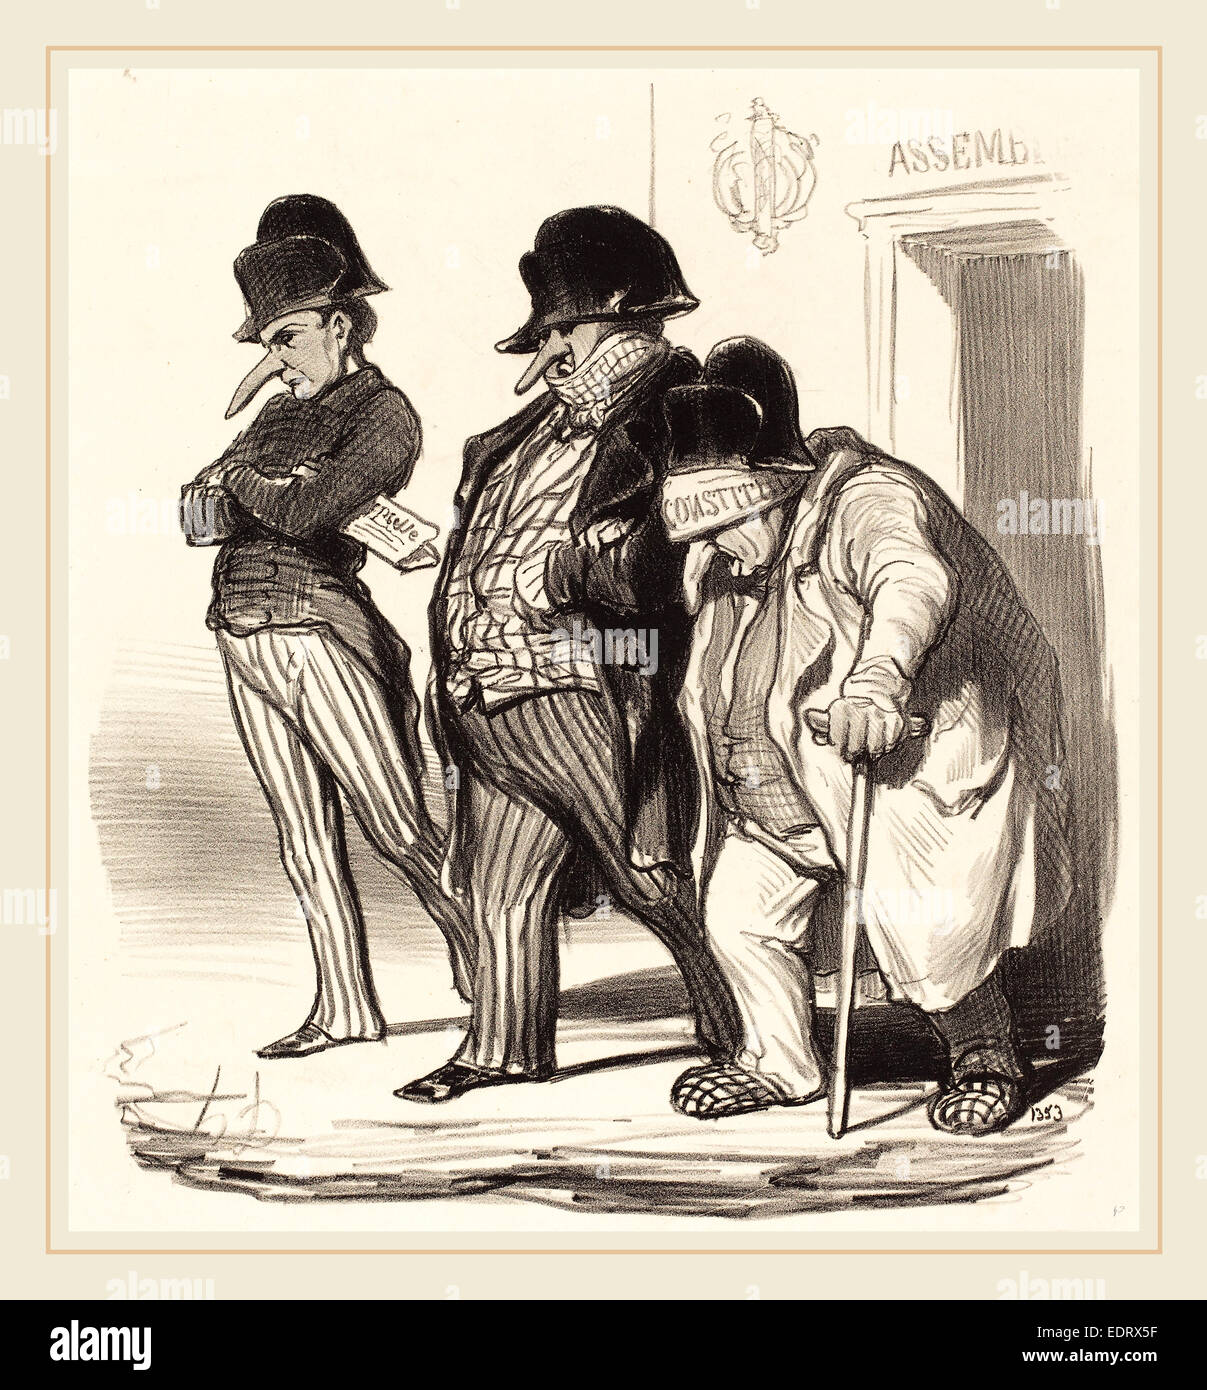 Honoré Daumier (French, 1808-1879), Les Journaux Napoléoniens sortant de l'Assemblée Nationale, 1848, lithograph Stock Photo